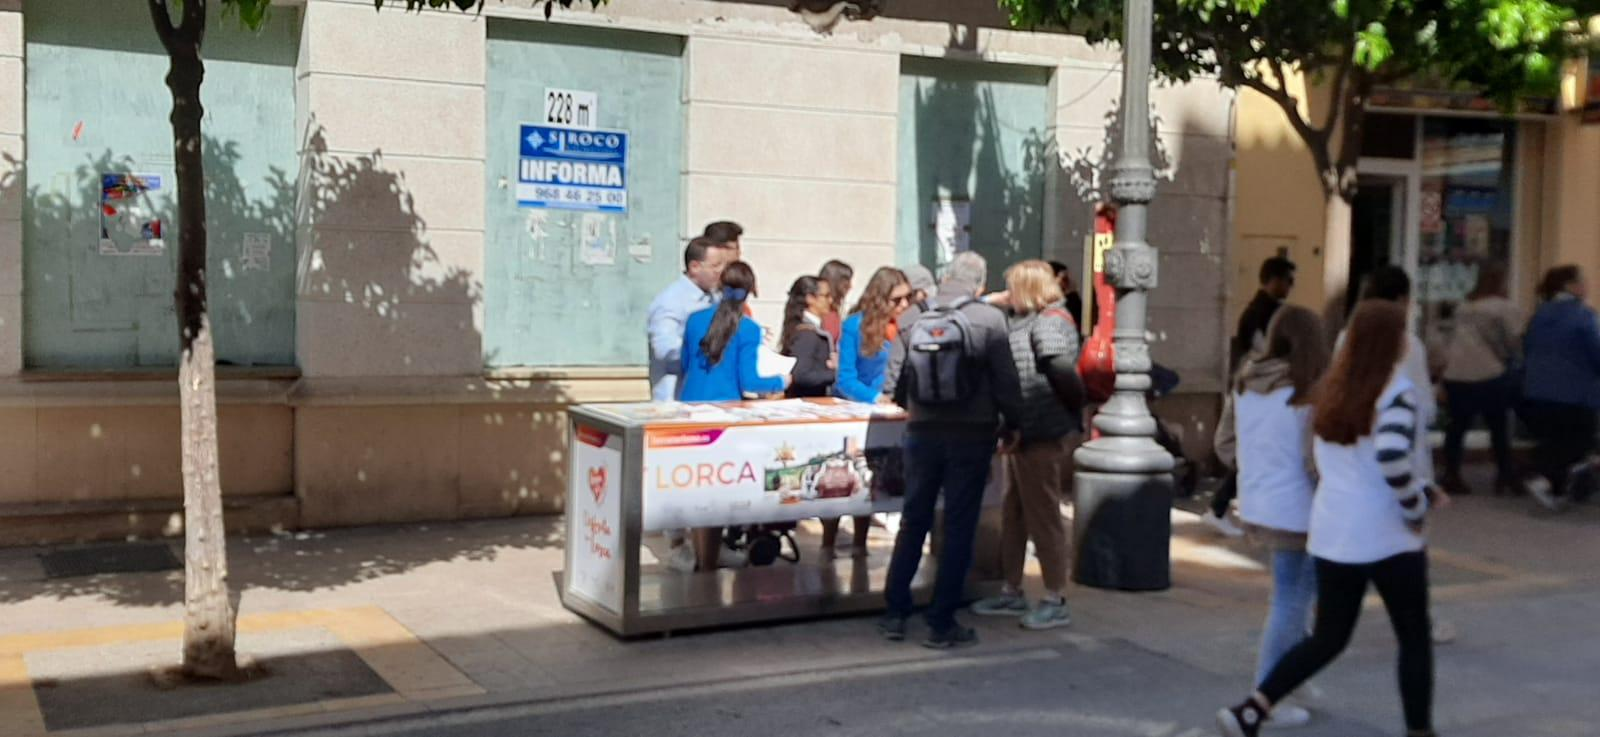 Los visitantes, turistas y público en general atendido en los Puntos de Información, los diez días de la Semana Santa de Lorca, superan las cifras del año prepandémico, el 2019